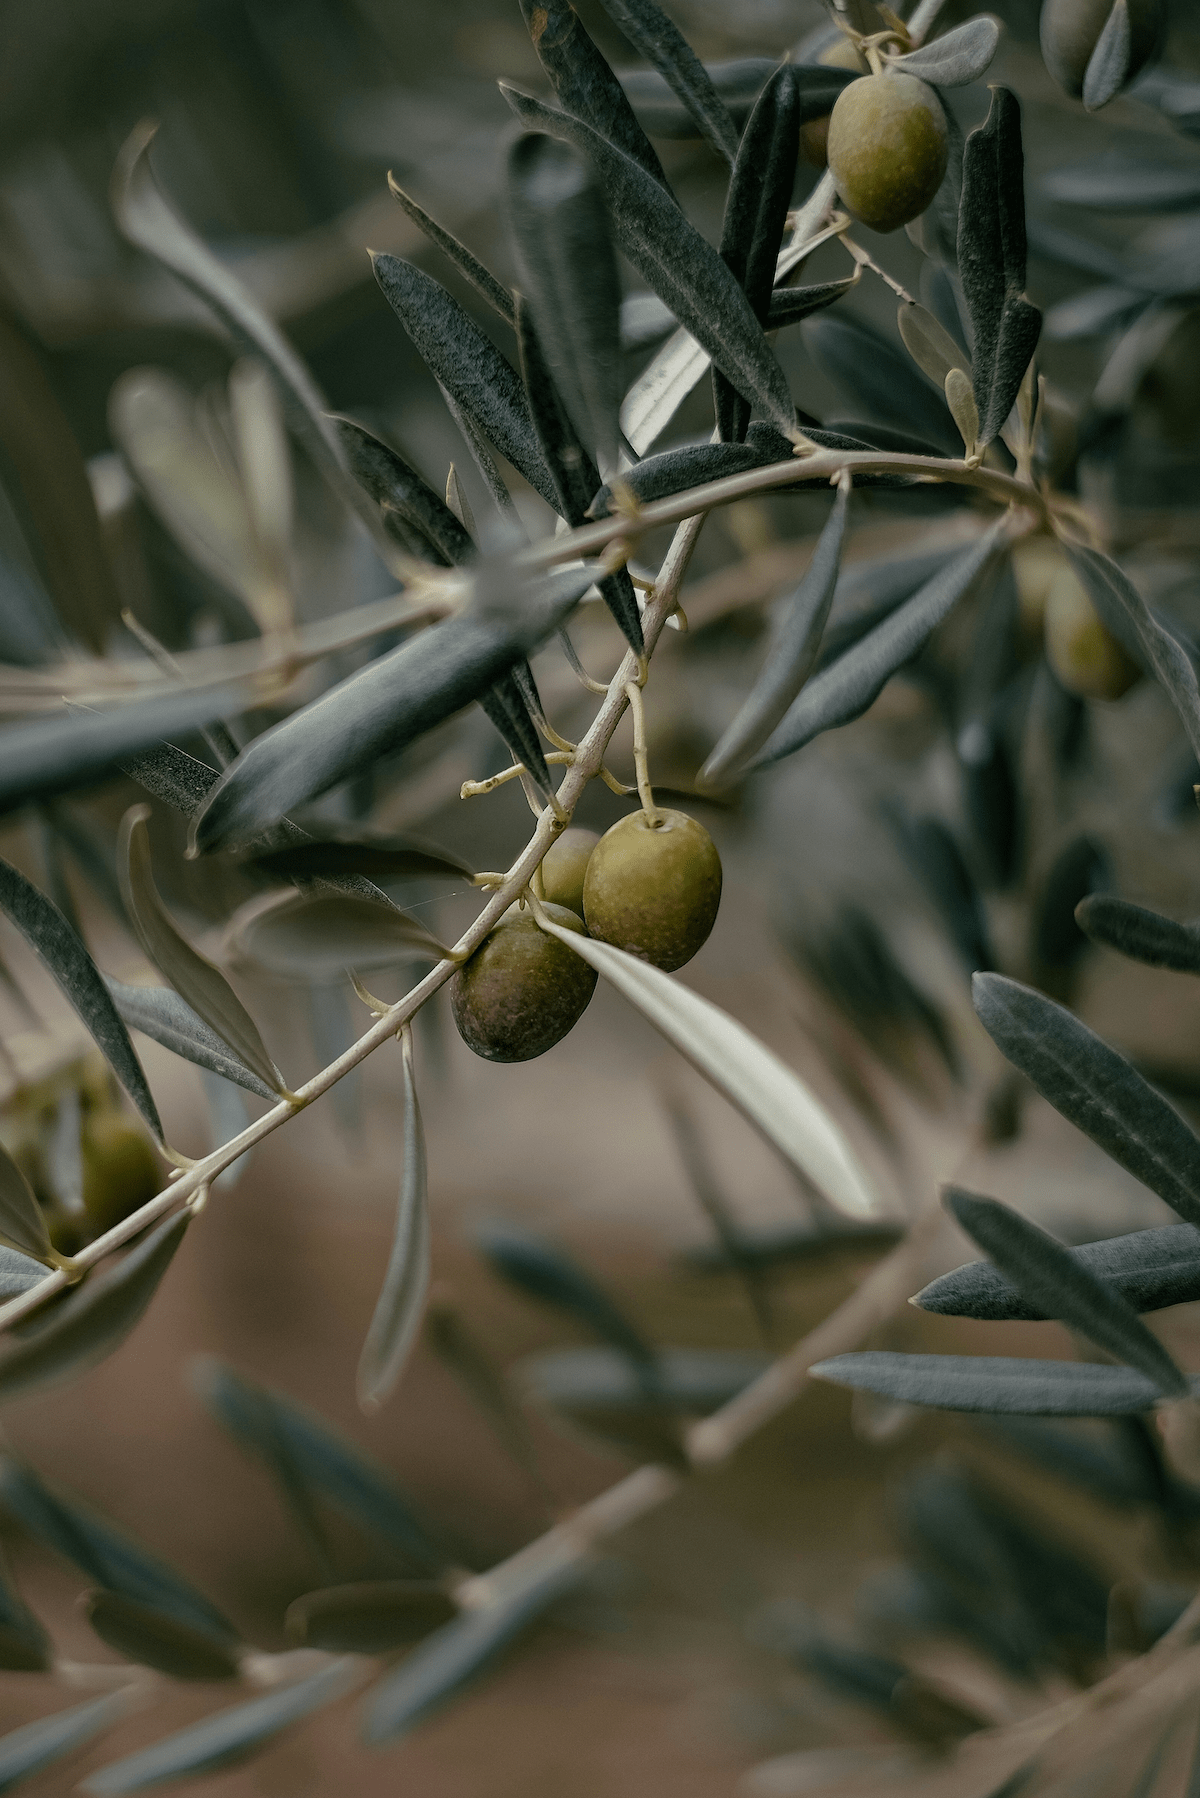 Nahaufnahme von Oliven, die an einem Olivenzweig hängen, umgeben von silbrig-grünen Blättern. Der Hintergrund ist unscharf, was den Fokus auf die Oliven und die Blätter legt und eine natürliche, friedliche Atmosphäre vermittelt.